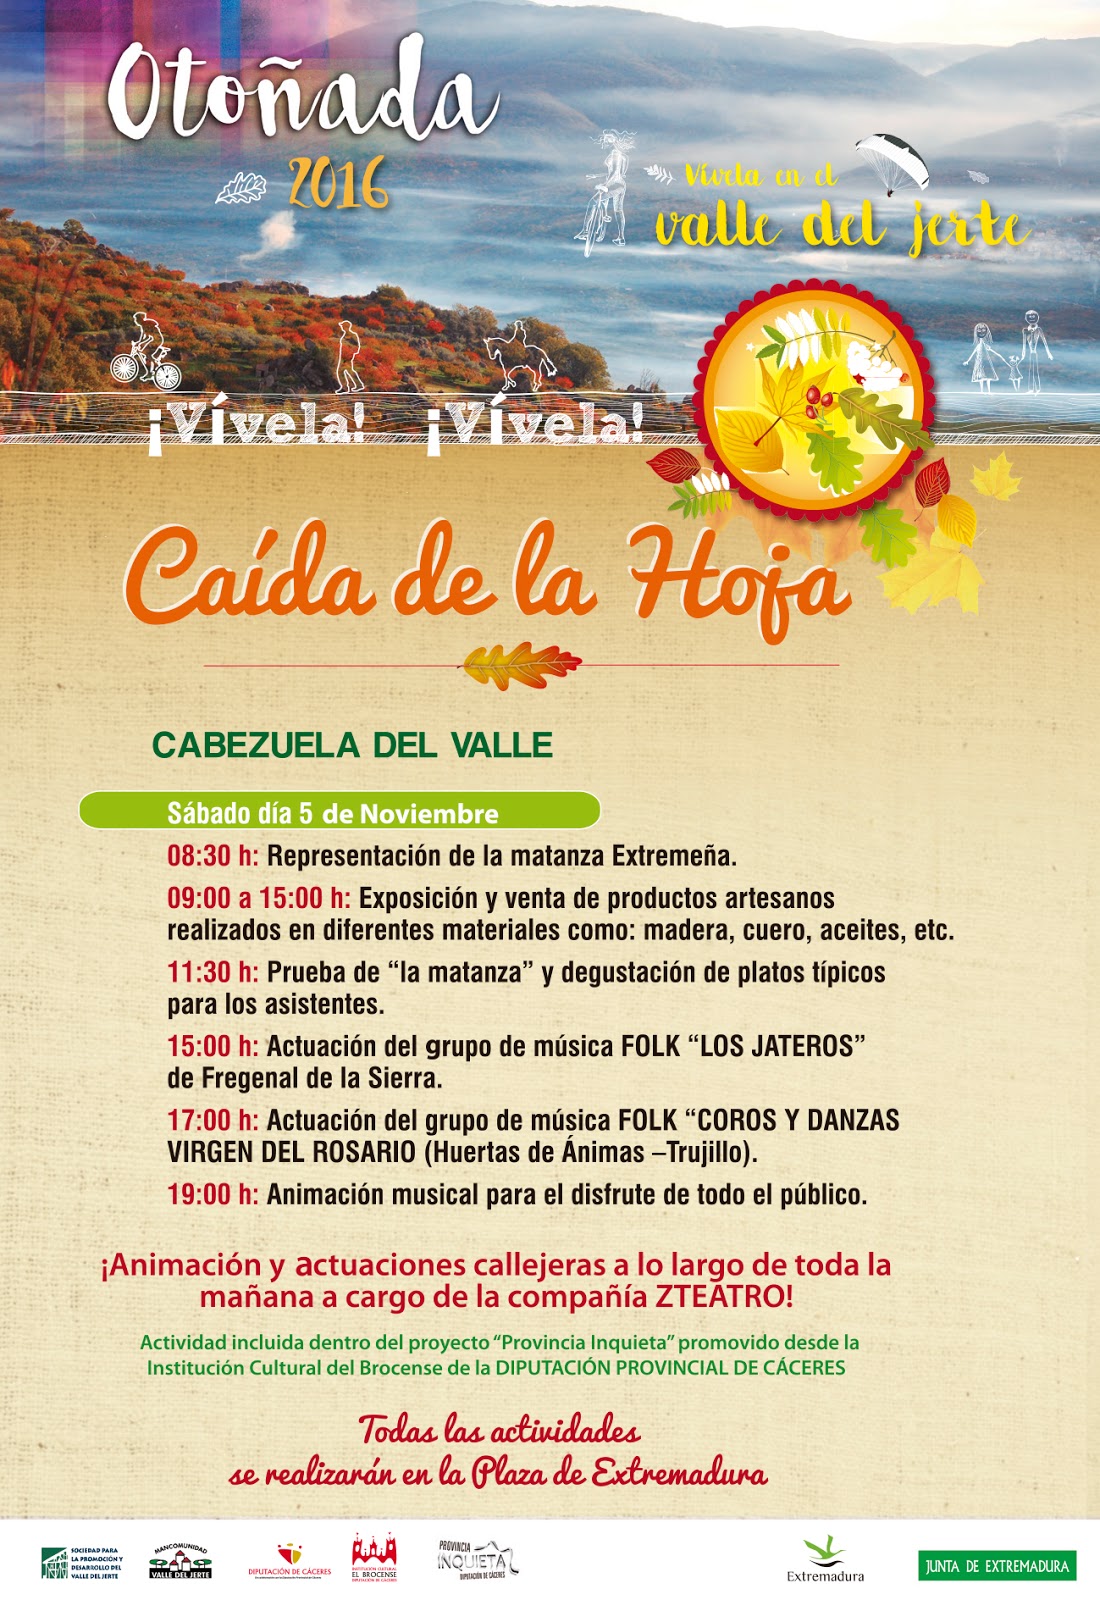 Fiesta de la Caída de la Hoja (5 de noviembre en Cabezuela del Valle)